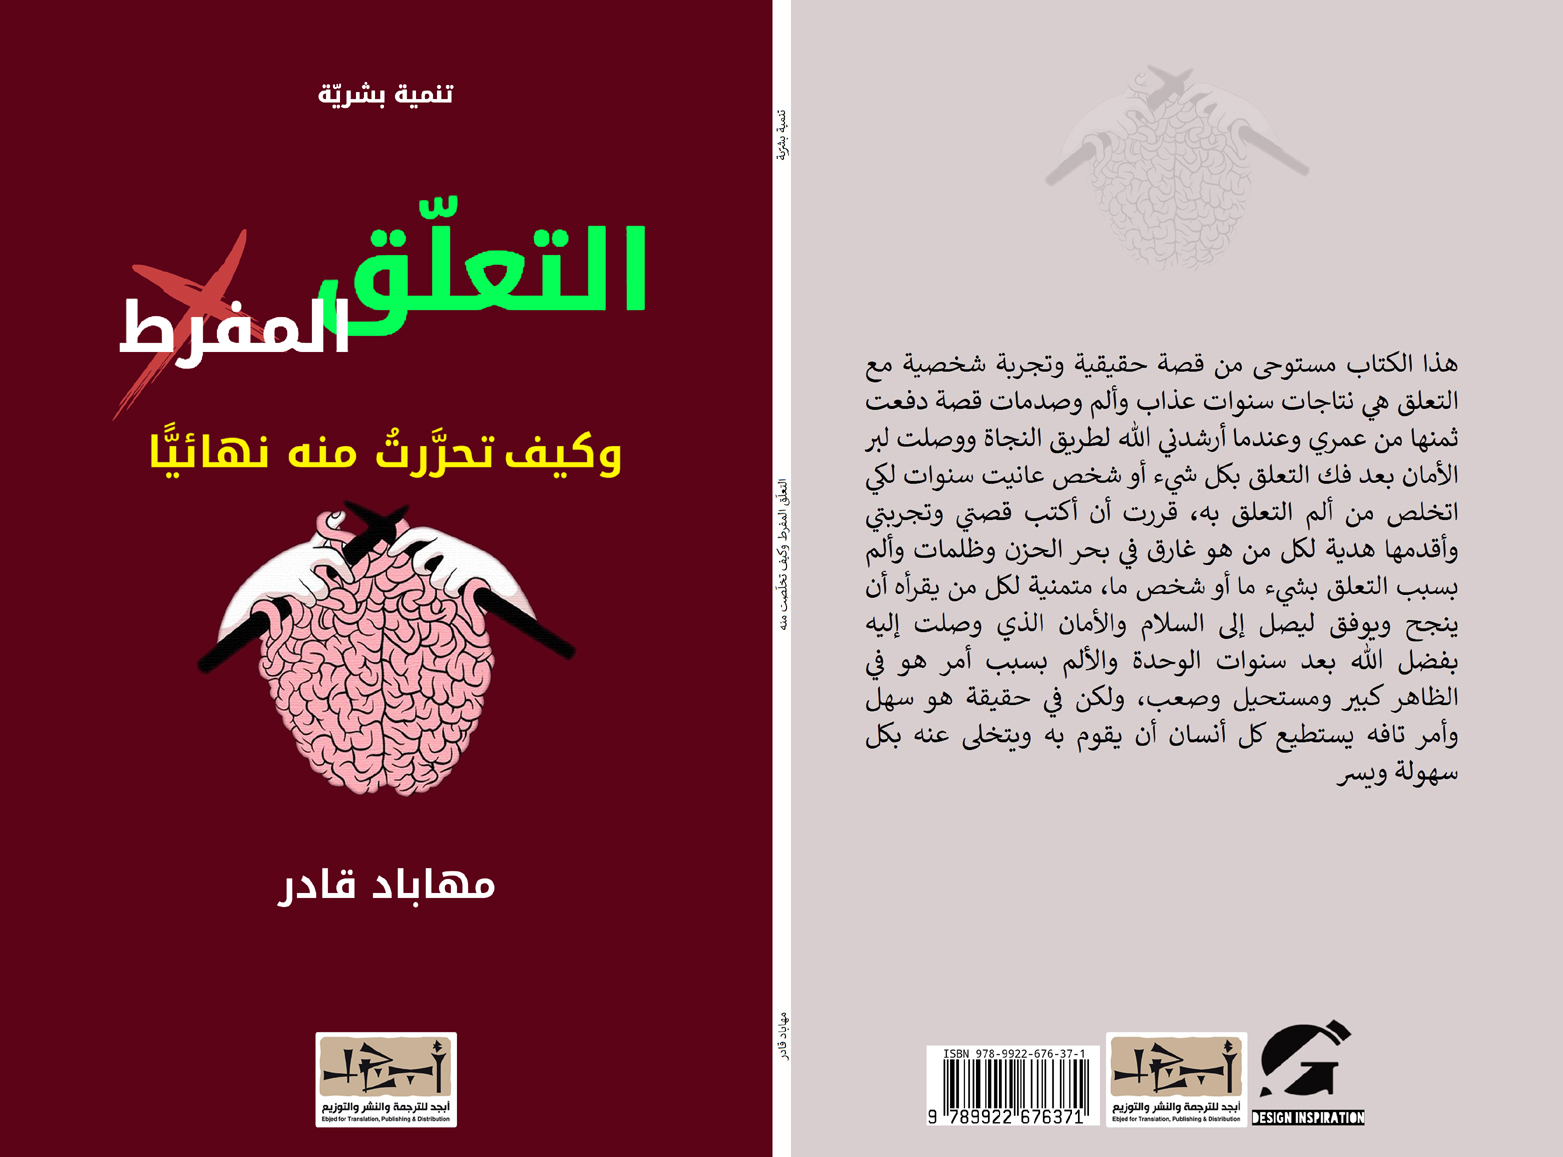 اسم الكتاب: التعلق المفرط، وكيف تحررتُ منه تأليف: مهاباد قادر 